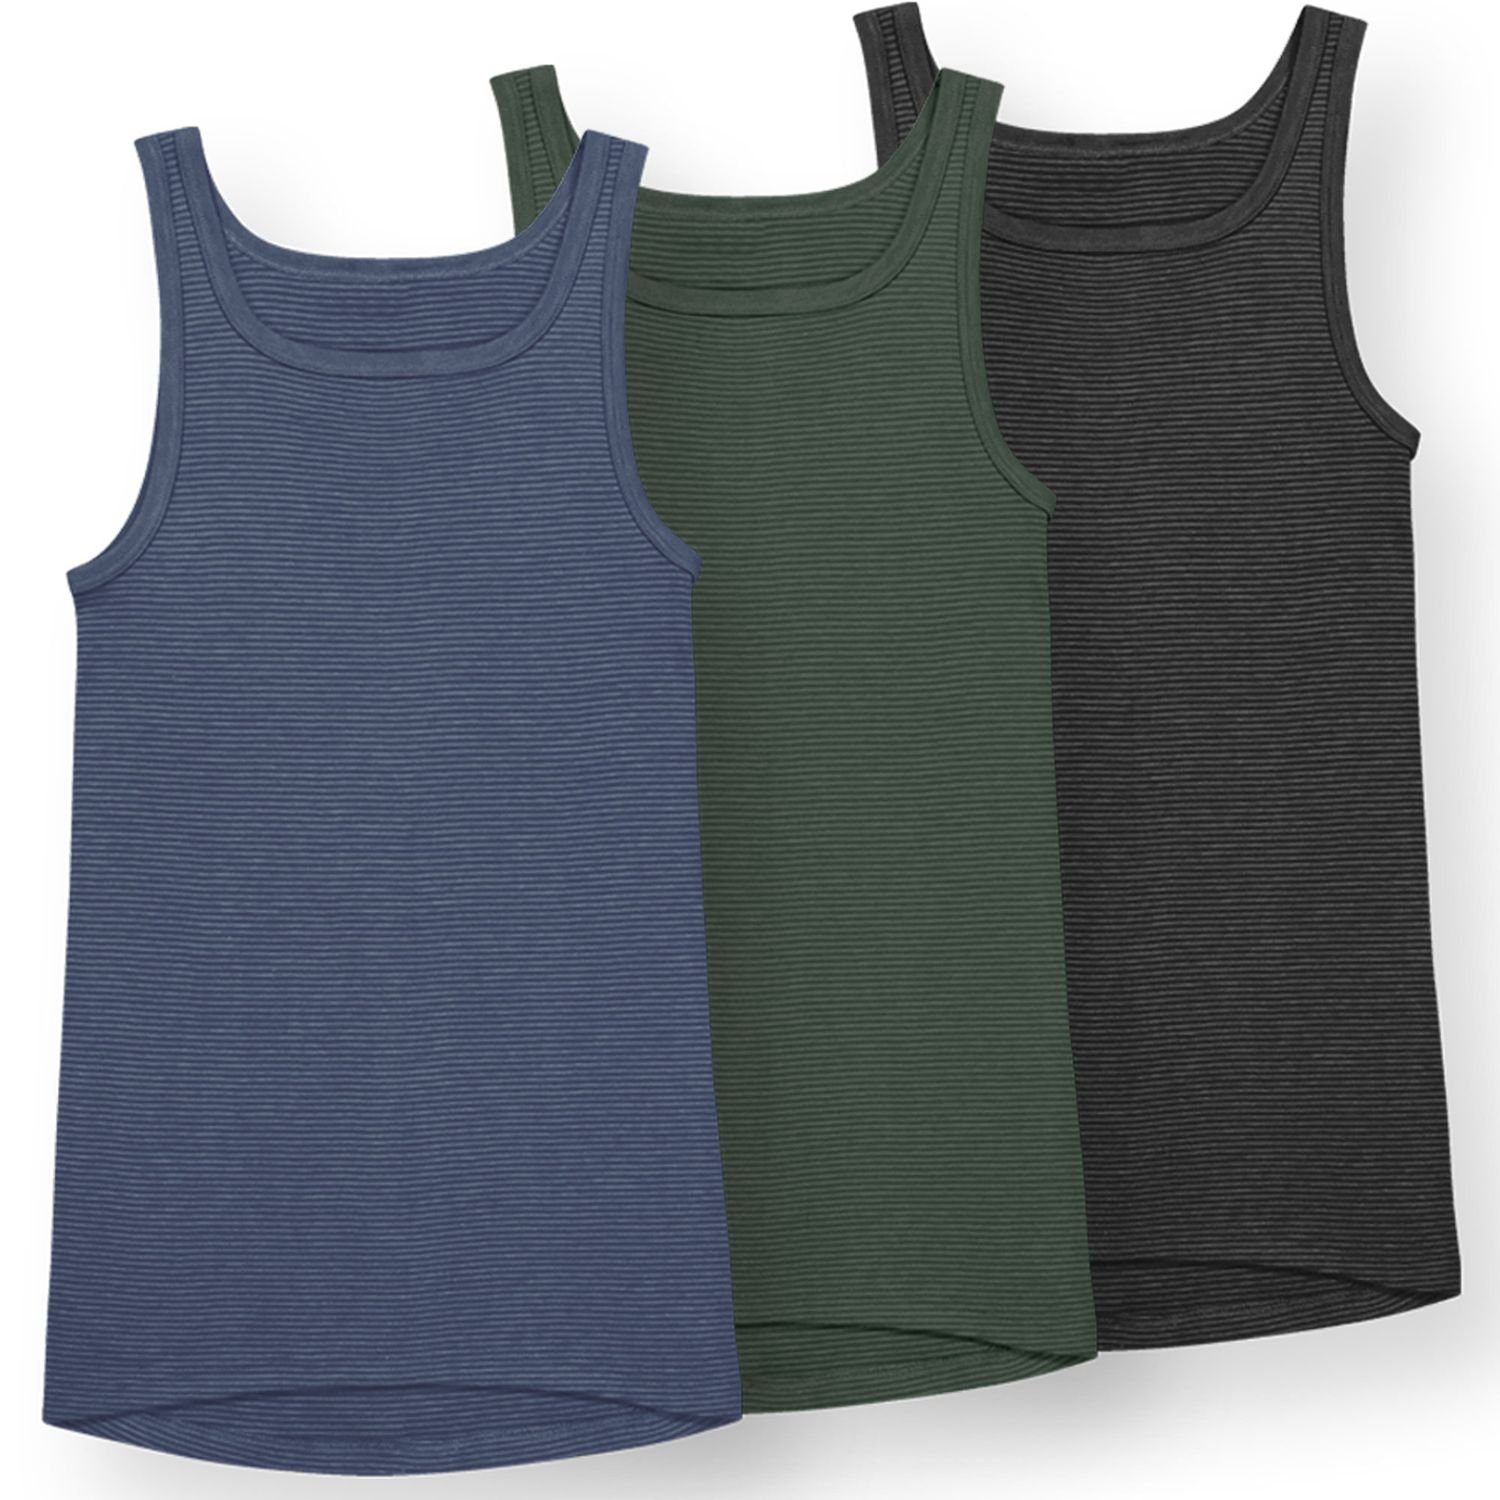 Ammann Unterhemd Premiumqualität (Mehrpack, 3-St., 3 Stück) strapazierfähig und pflegeleicht im 3er Pack dunkelblau / olive / anthrazit